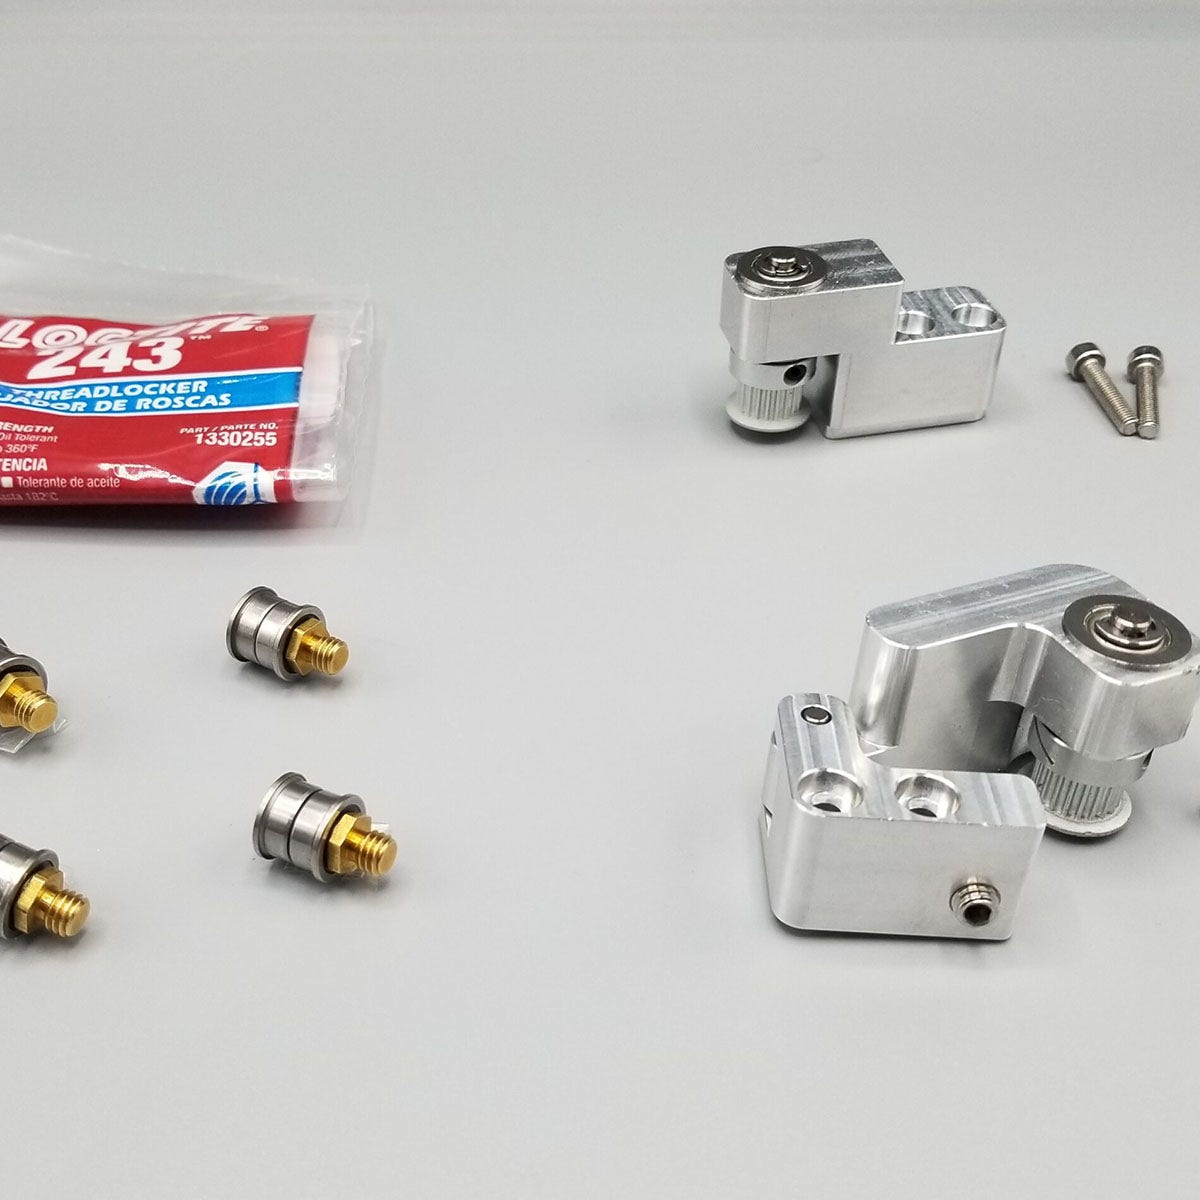 Markforged Industrial & Metal Series Pulley Maintenance Kit